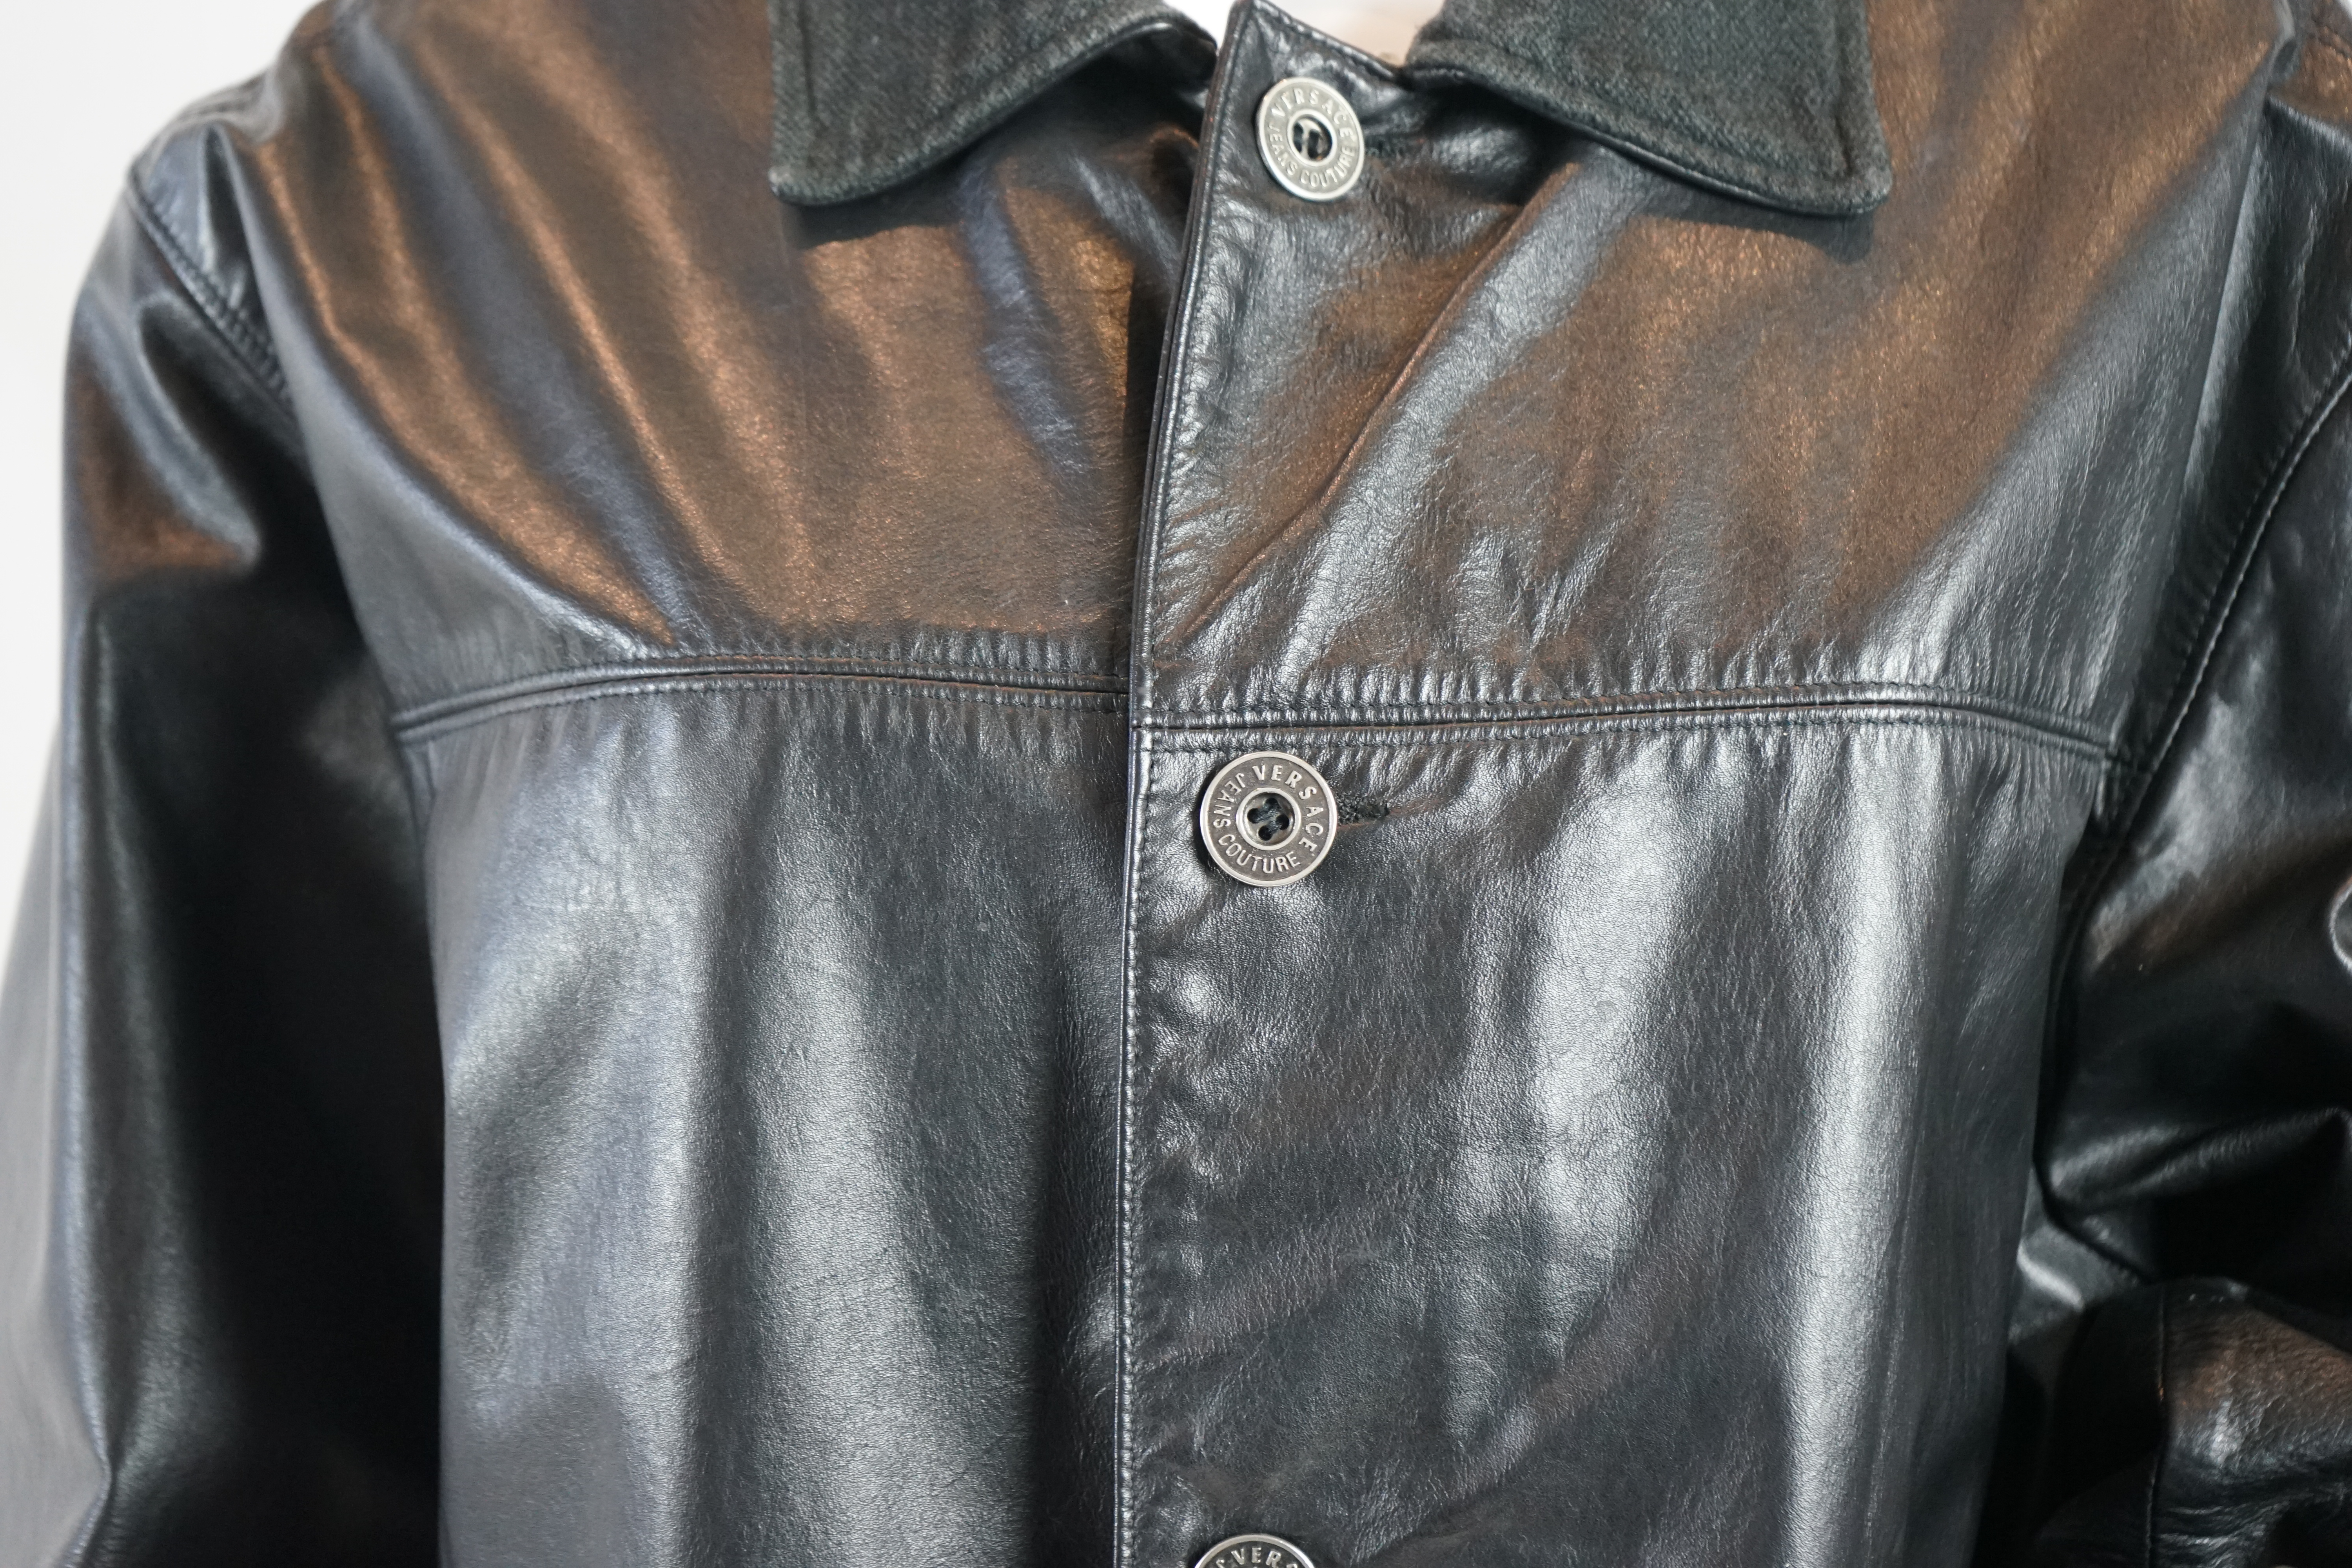 A Versace Jeans Couture men's black leather jacket and a Donna Karan men's black leather jacket, Size L